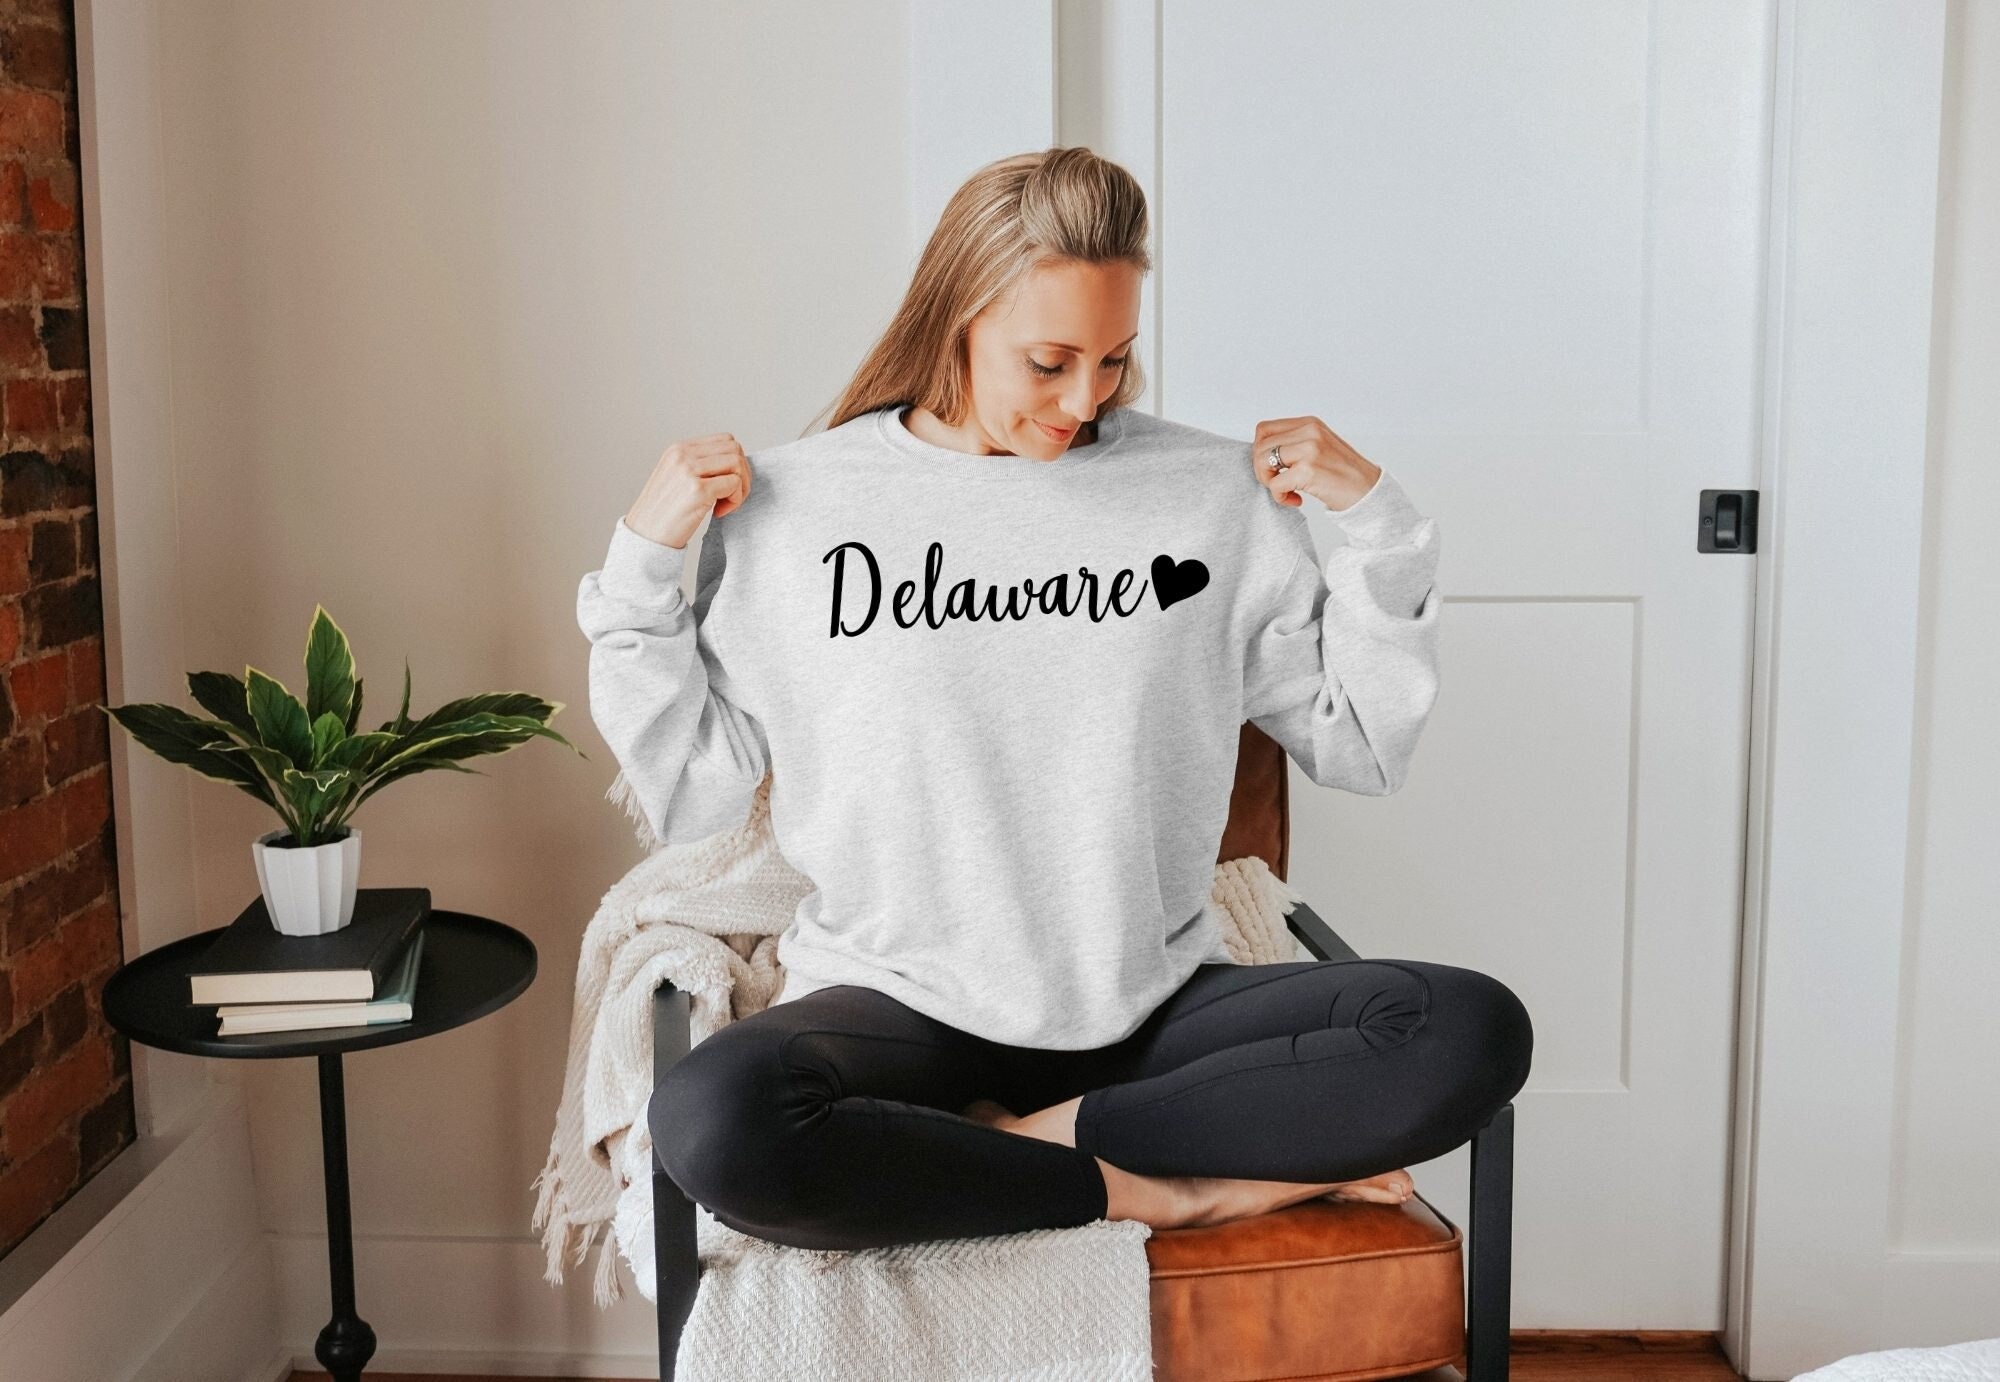 Toegangsprijs Heel boos Verzakking Delaware Shirt Cute Delaware Sweatshirt Delaware Sweater - Etsy